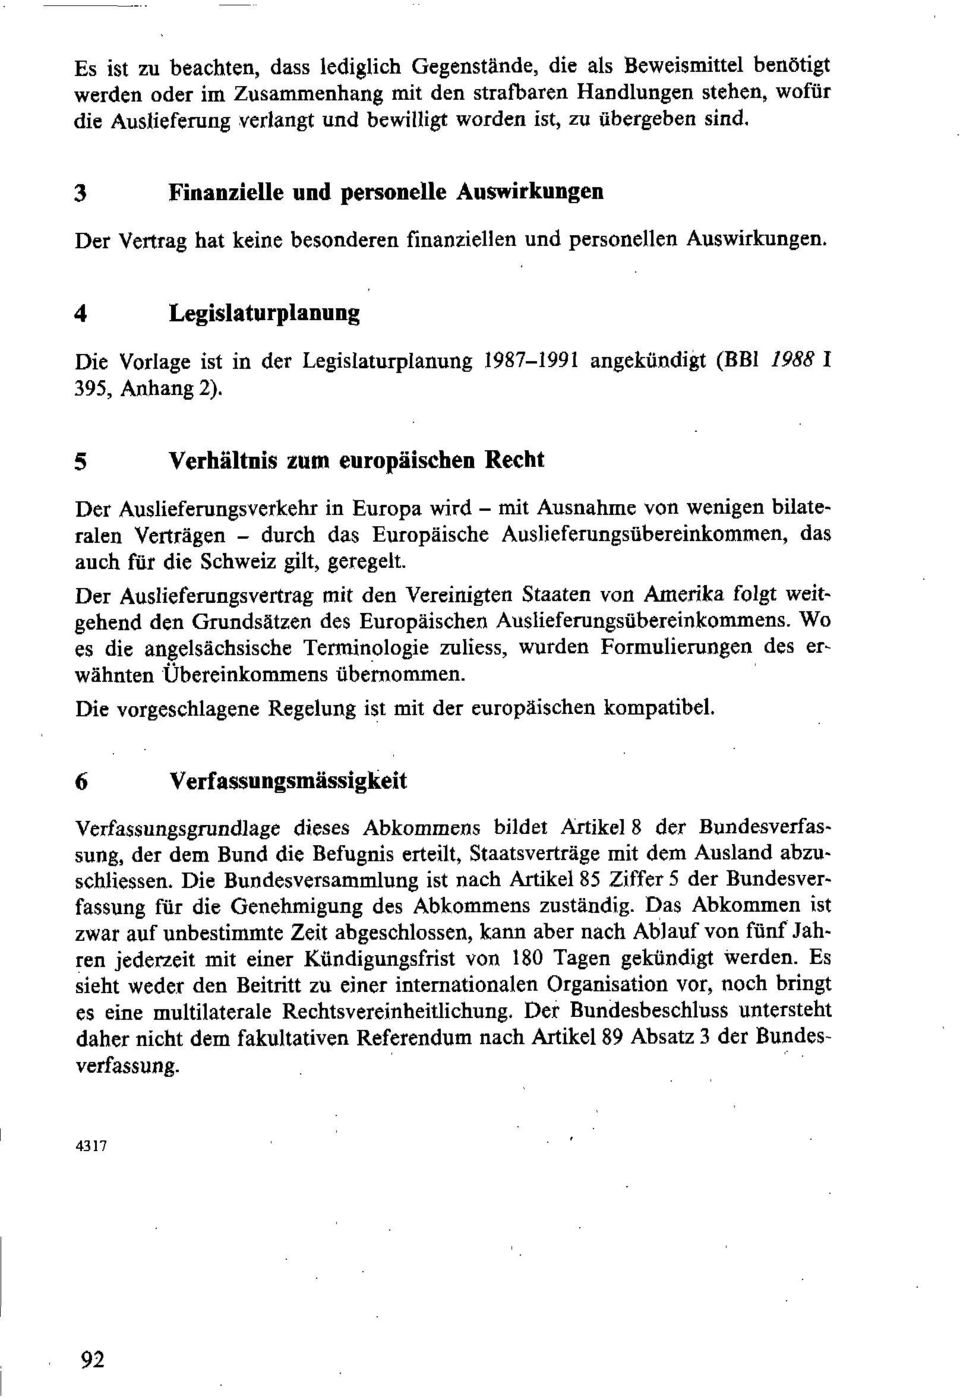 4 Legislaturplanung Die Vorlage ist in der Legislaturplanung 1987-1991 angekündigt (BEI 1988 I 395, Anhang 2).